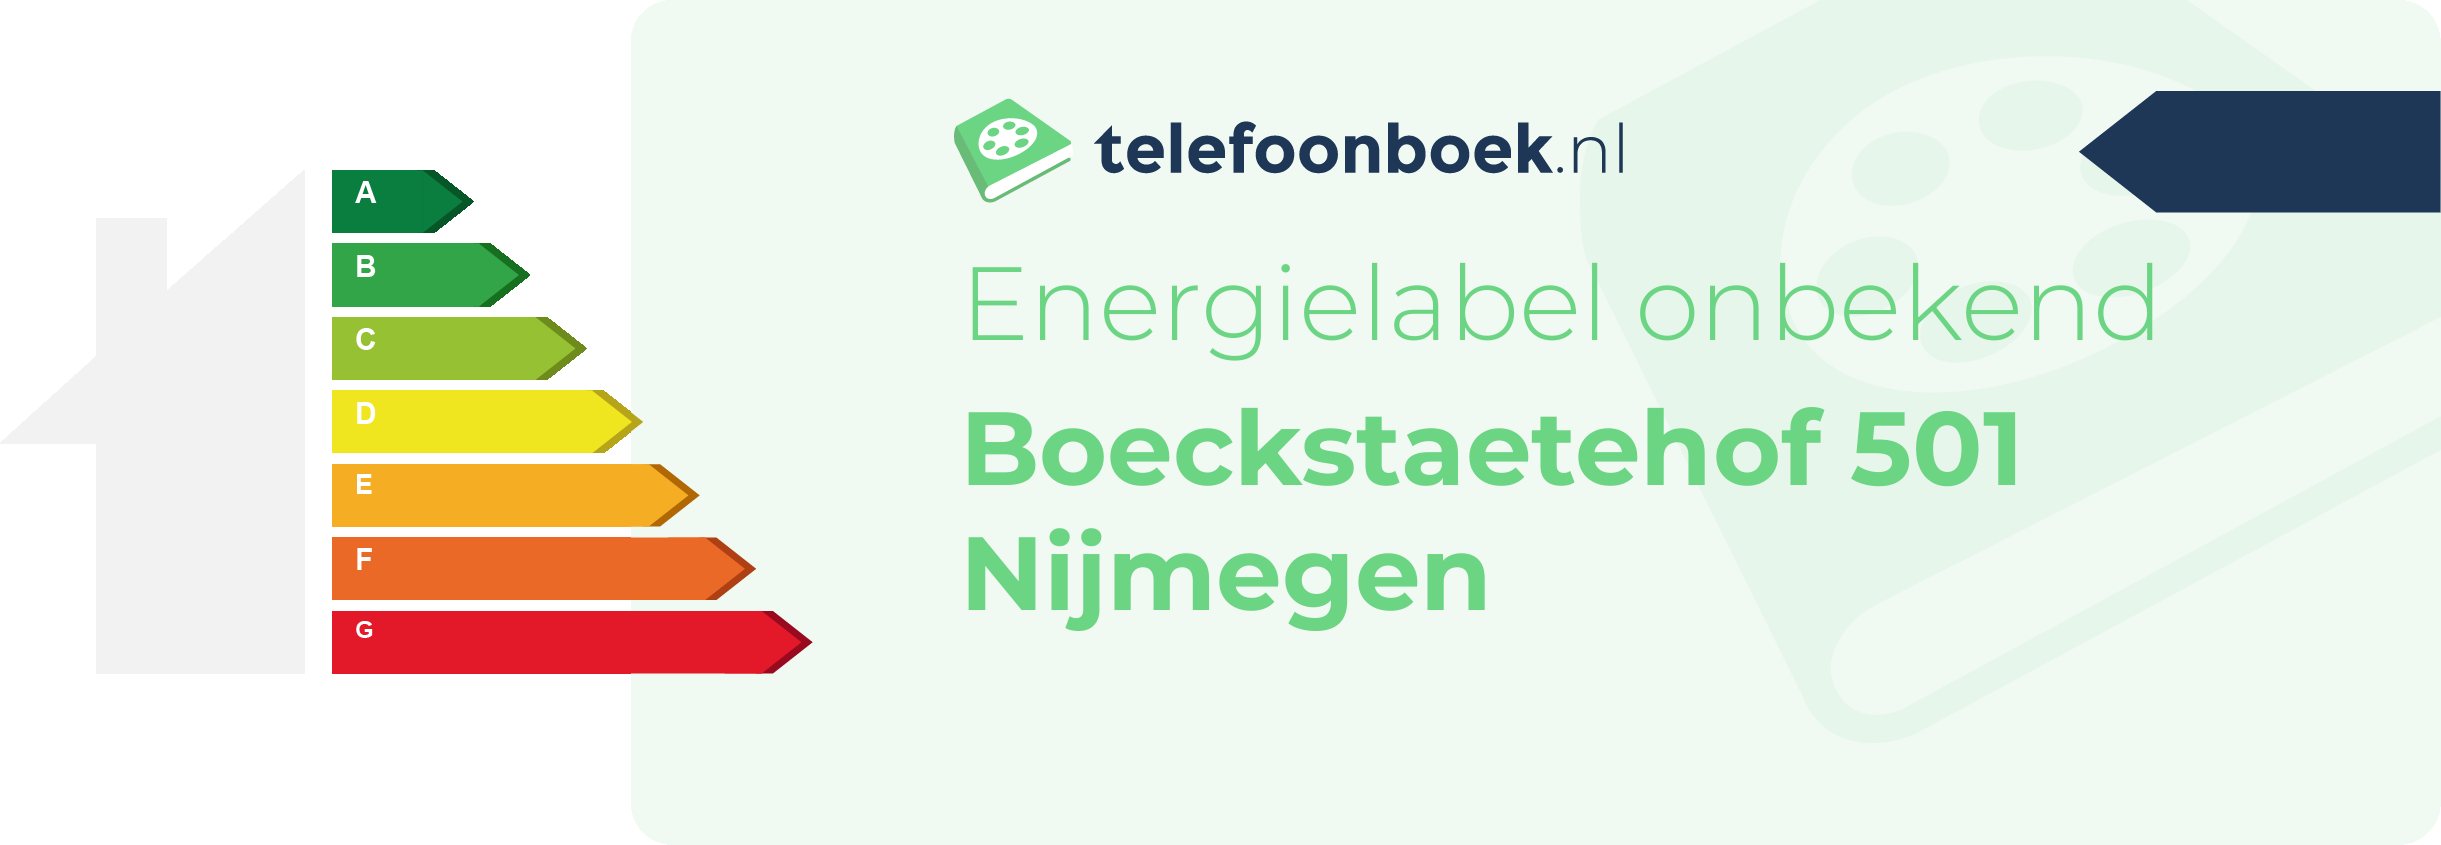 Energielabel Boeckstaetehof 501 Nijmegen